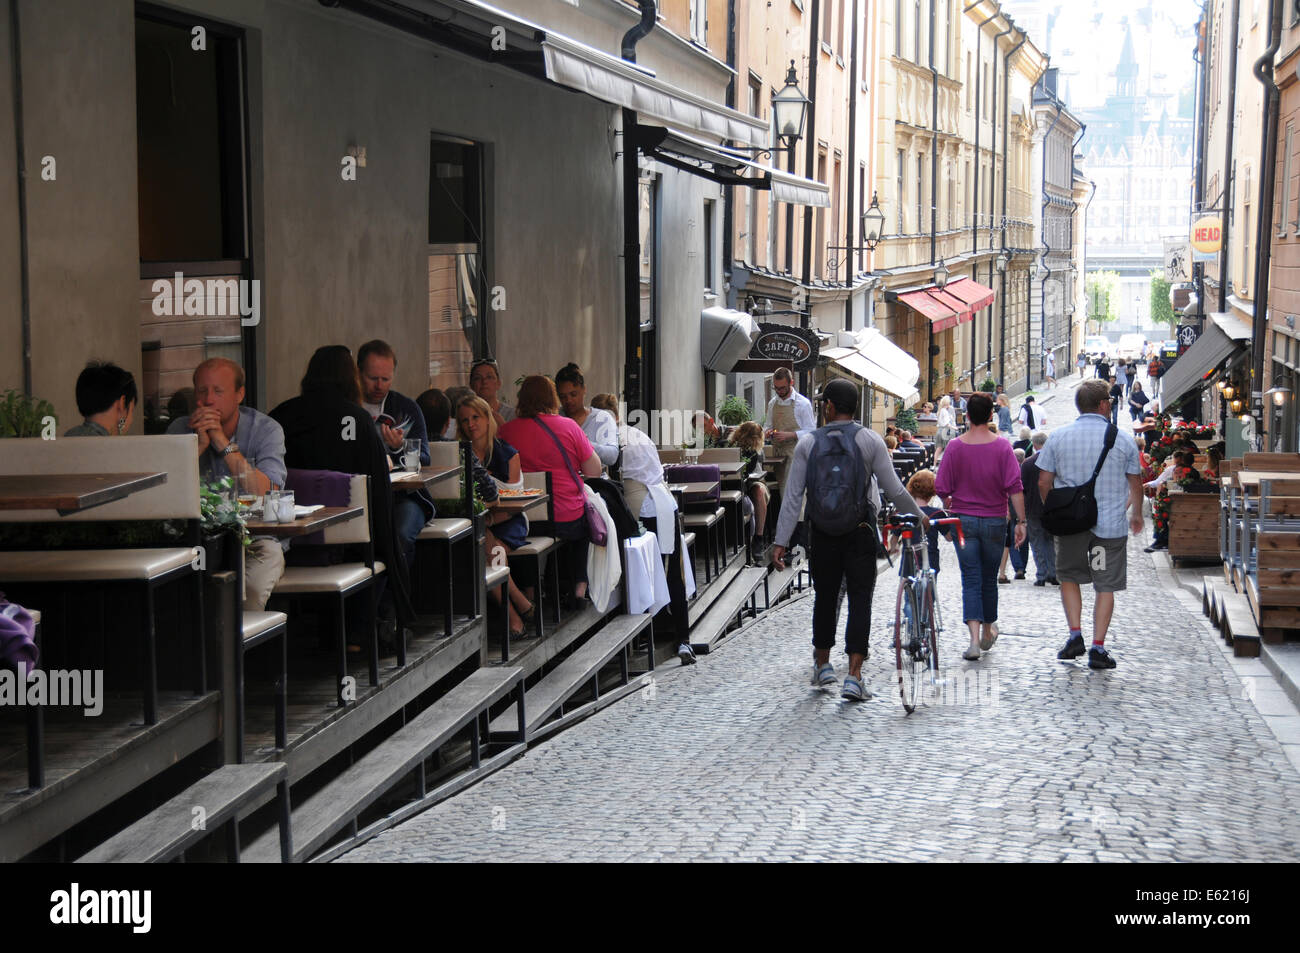 La vida en la calle en el casco antiguo de Estocolmo, con restaurantes, tiendas de café en la acera, los peatones y músicos a lo largo de calles adoquinadas Foto de stock